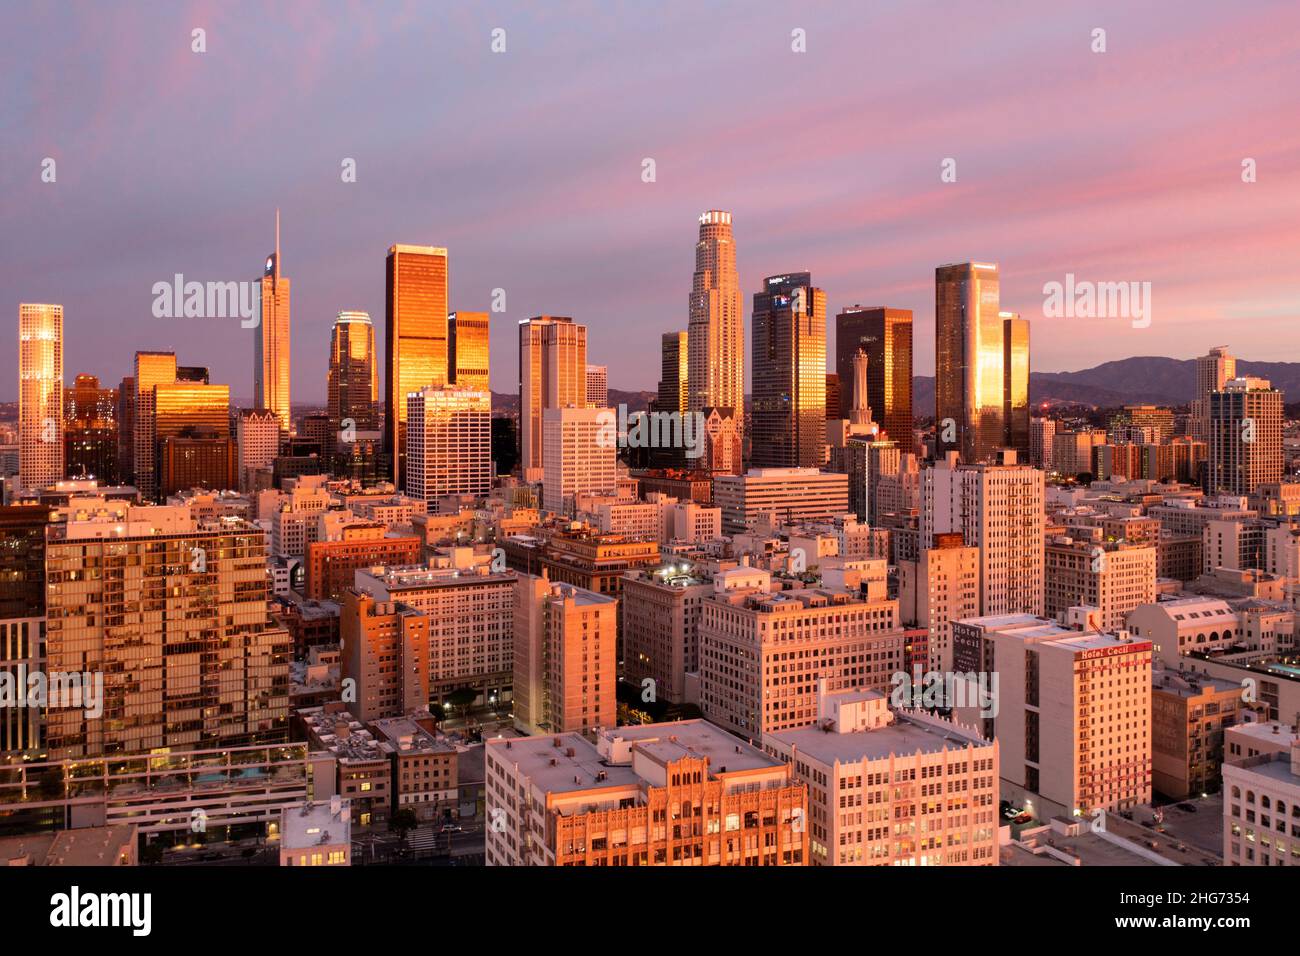 Vue aérienne d'un incroyable lever de soleil rose et or se reflète dans les tours du centre-ville de Los Angeles Banque D'Images